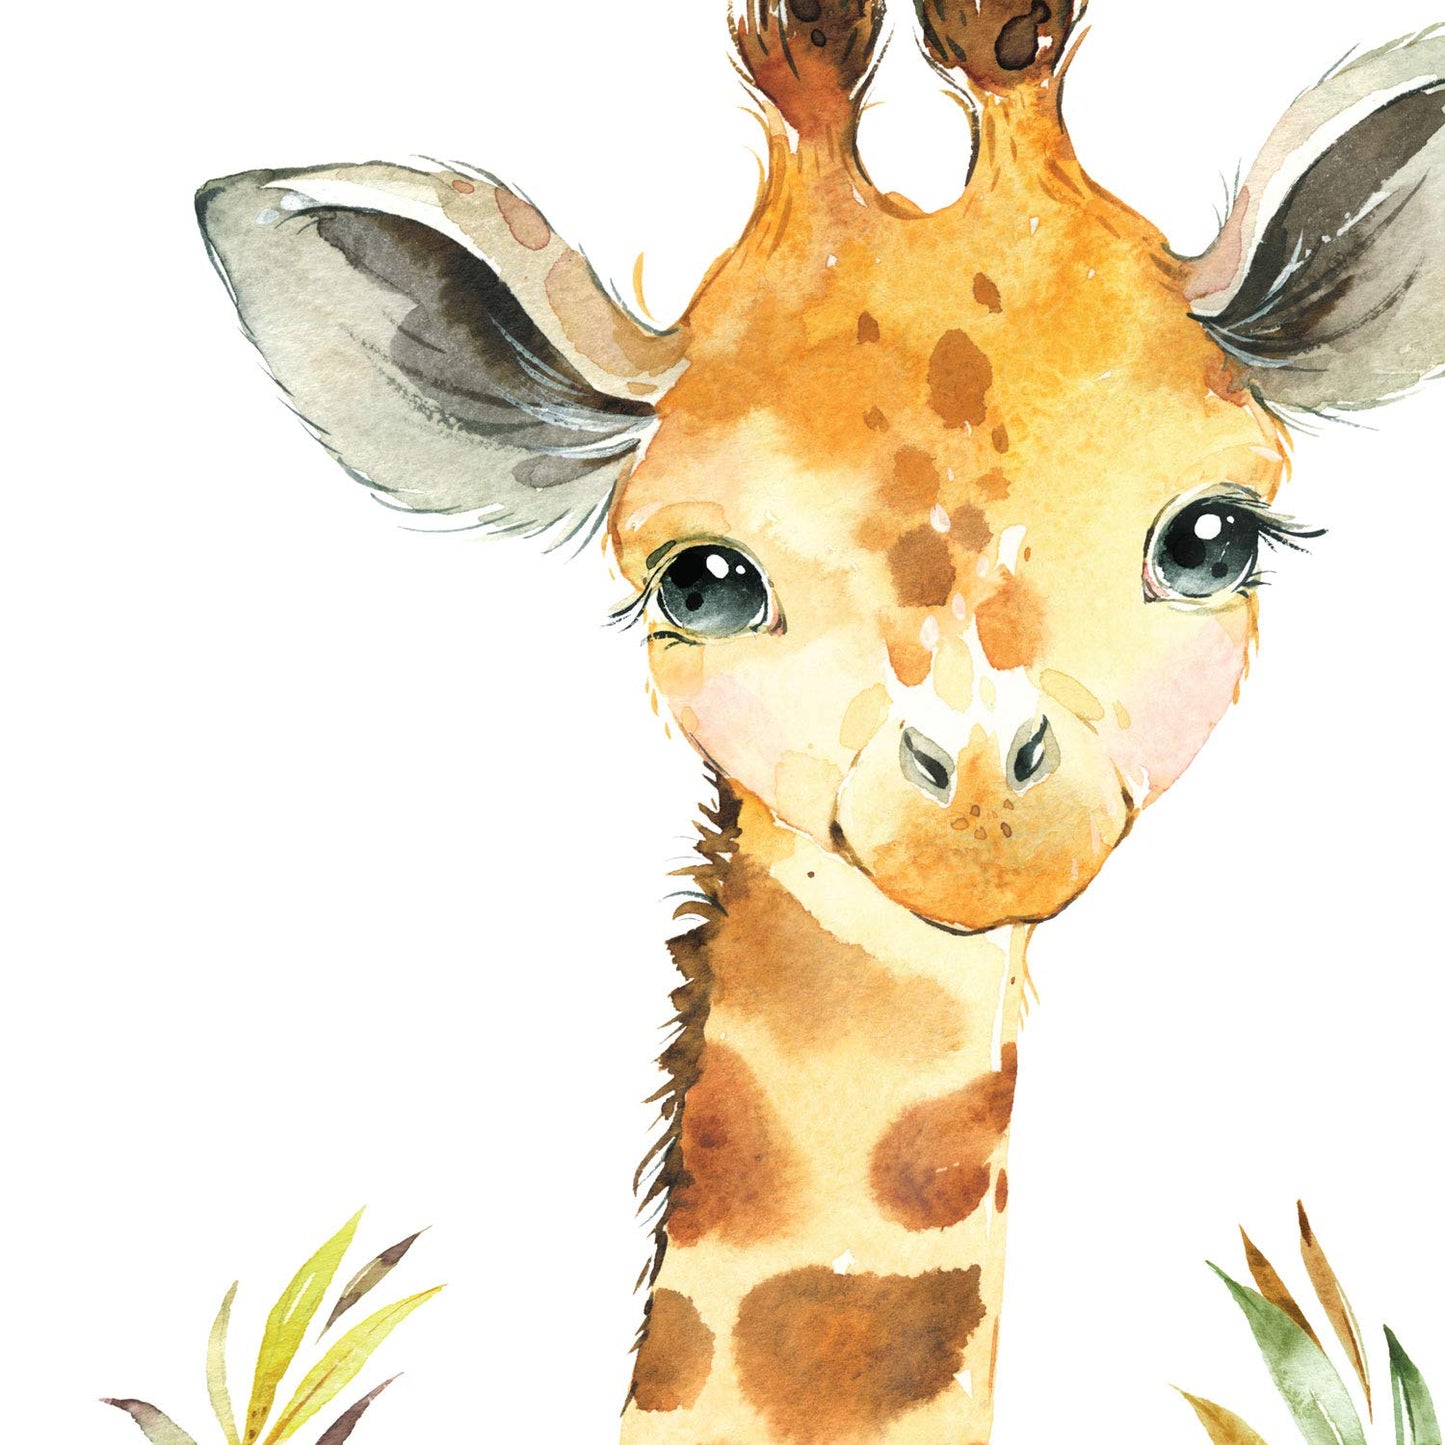 Pack de cuatro láminas con ilustraciones de animales. Girafa hipopotamo suricatas y leon.-Artwork-Nacnic-Nacnic Estudio SL